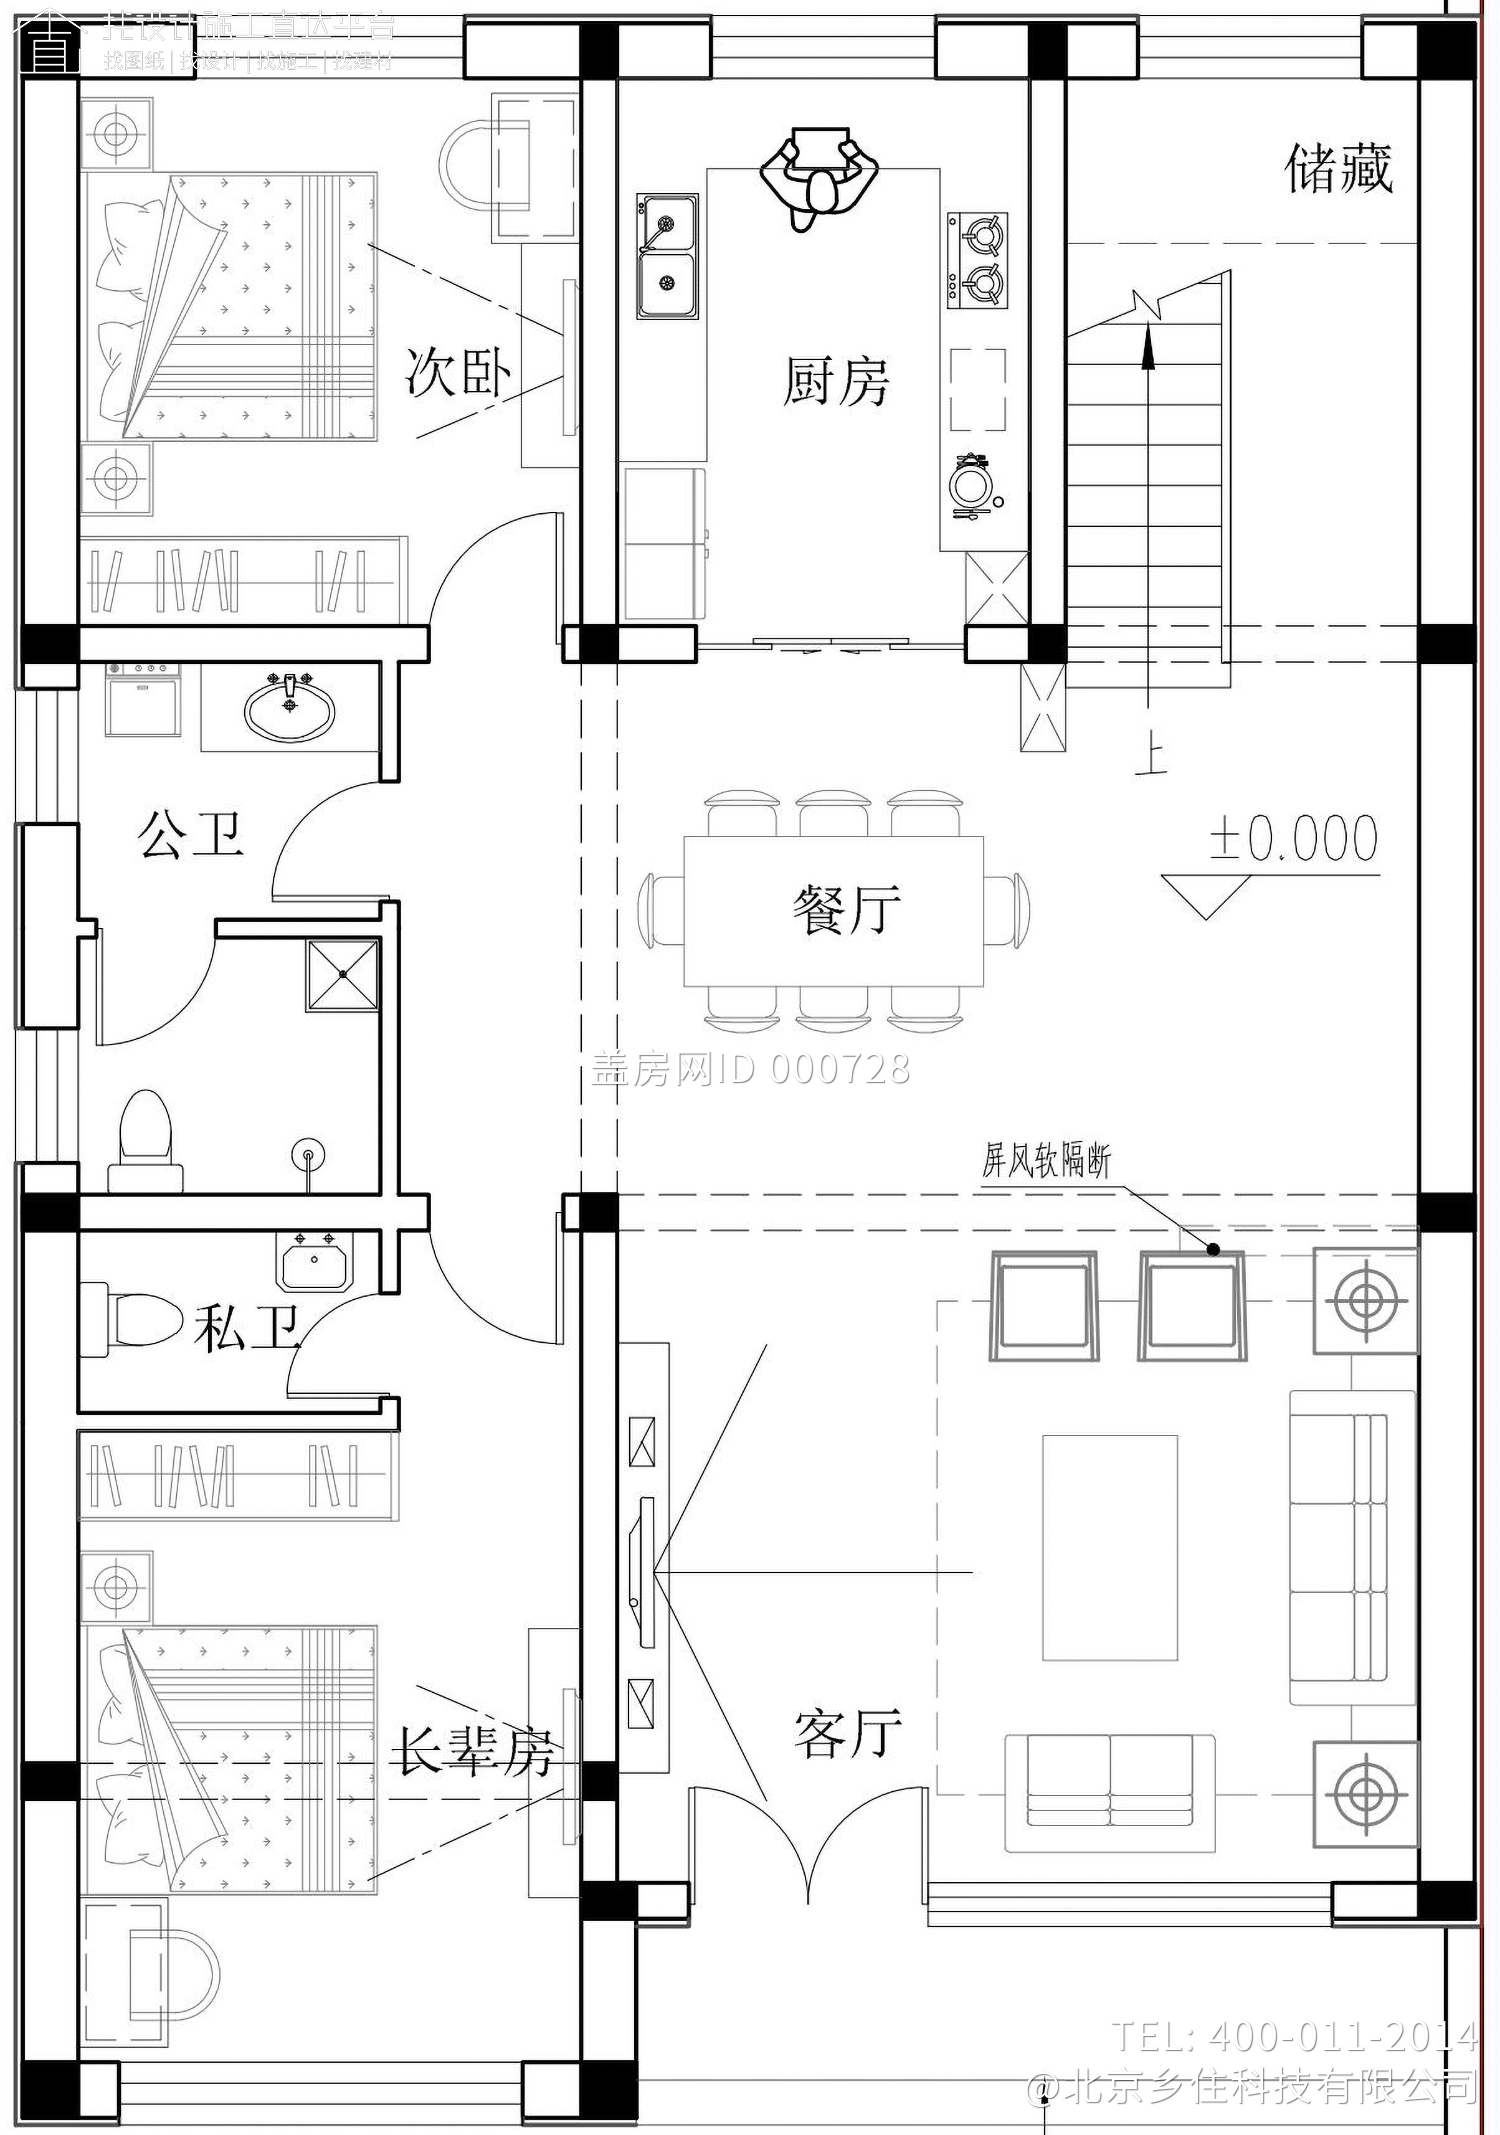 北京房山魏家二层现代别墅设计图纸